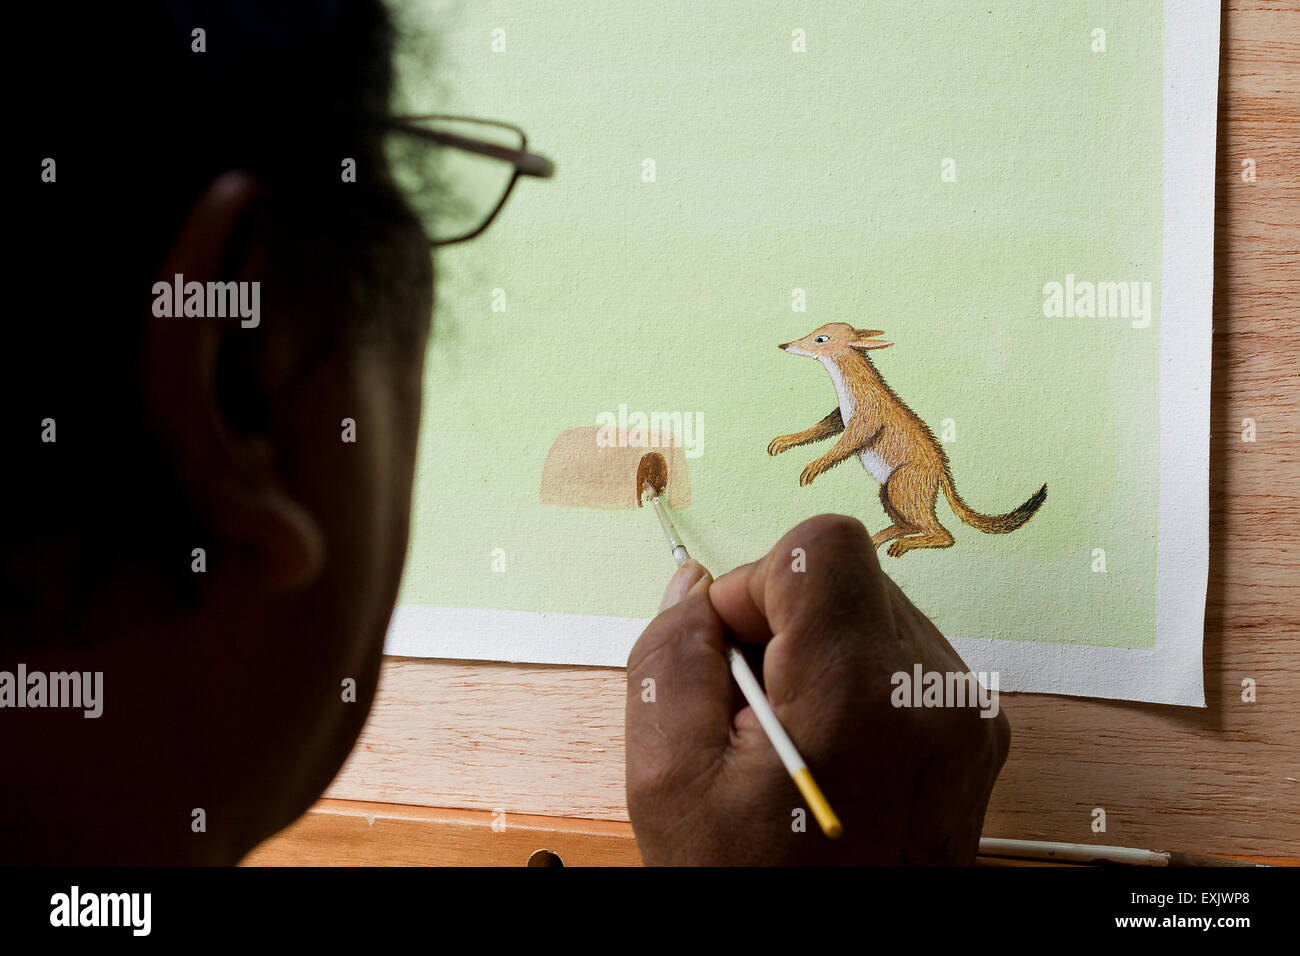 Man painting personnage animal sur papier Banque D'Images